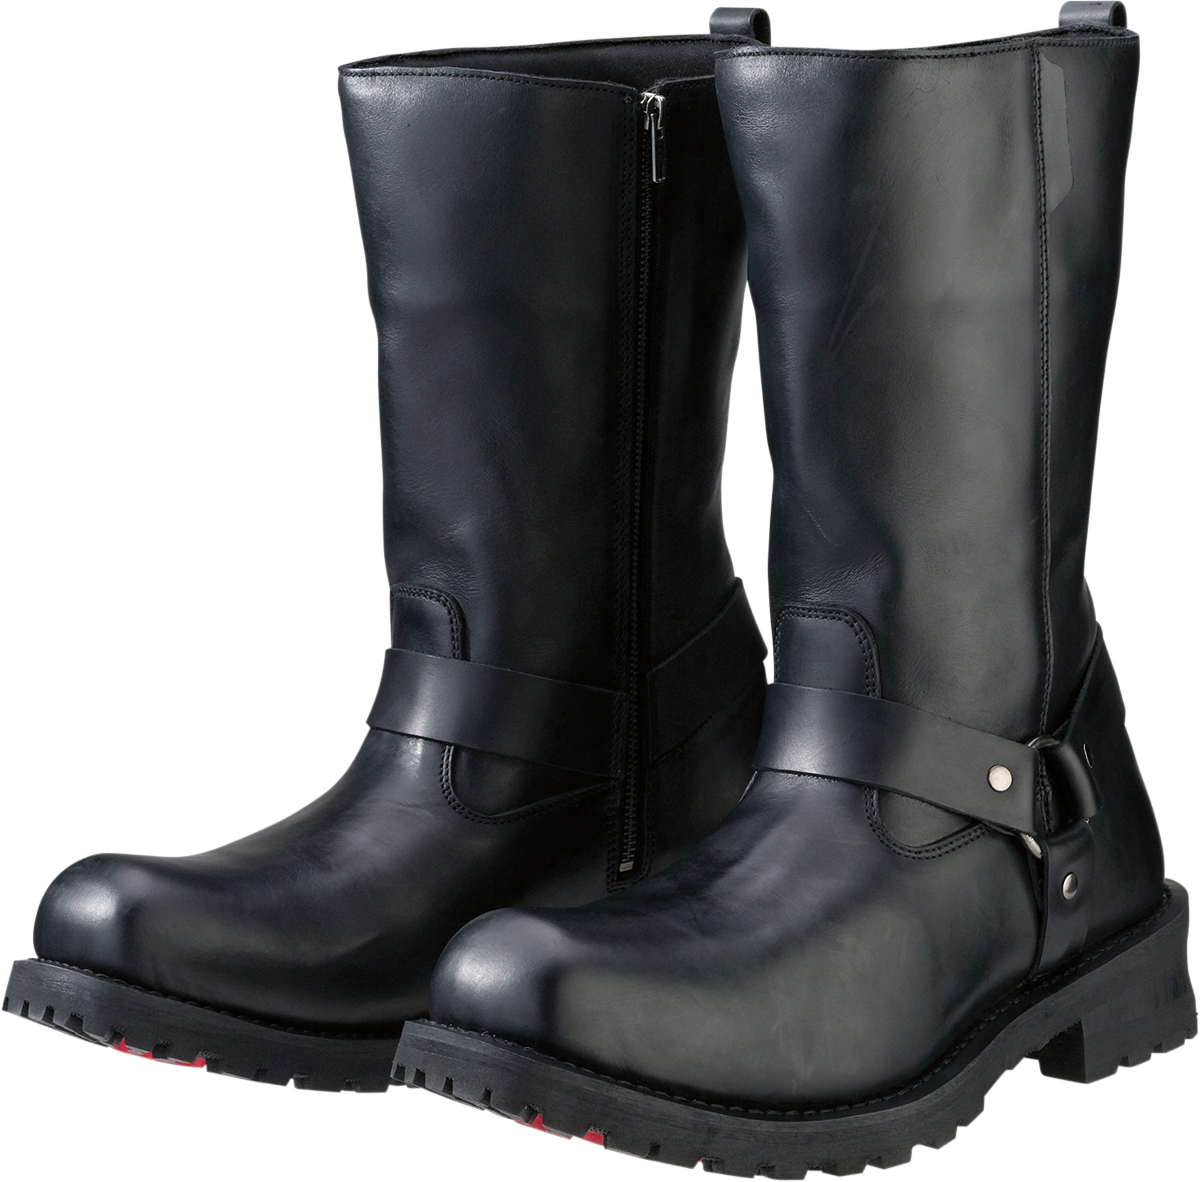 Z1R Riot Boots - Black - US 8.5 3403-0754